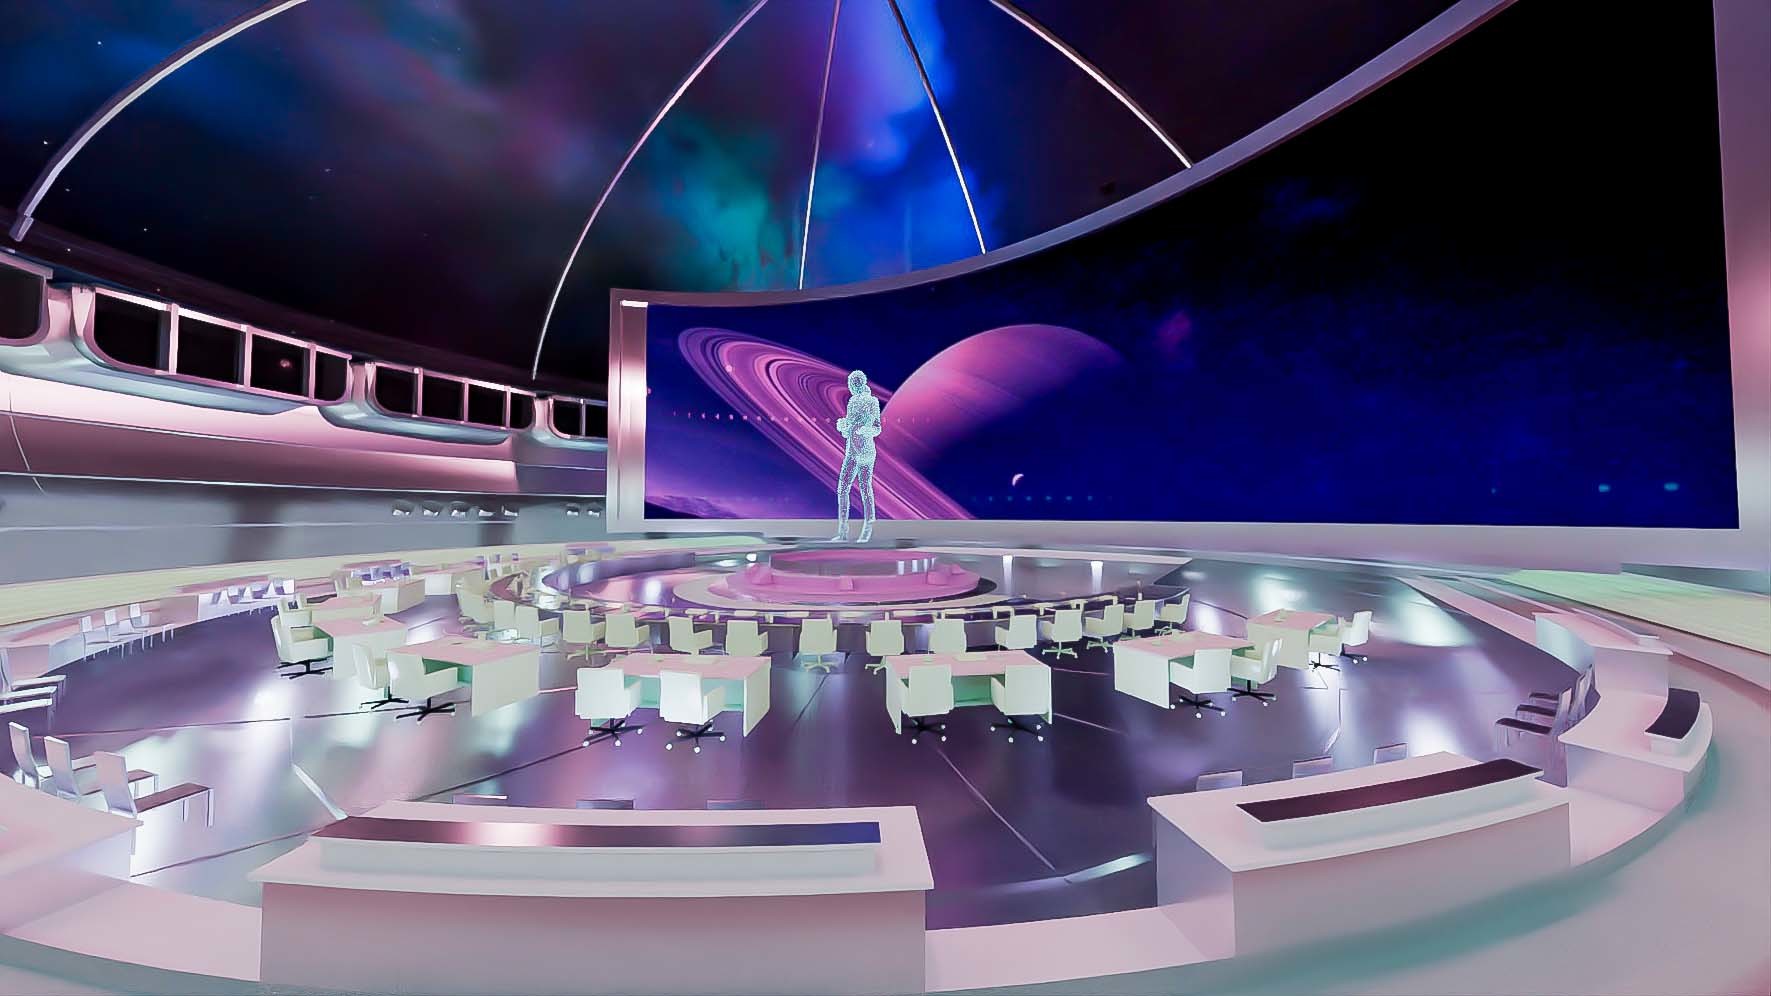 这是一张展现未来风格会议室的图片，中央有全息图像，周围是现代化座椅和桌子，背景是宇宙星空和行星。